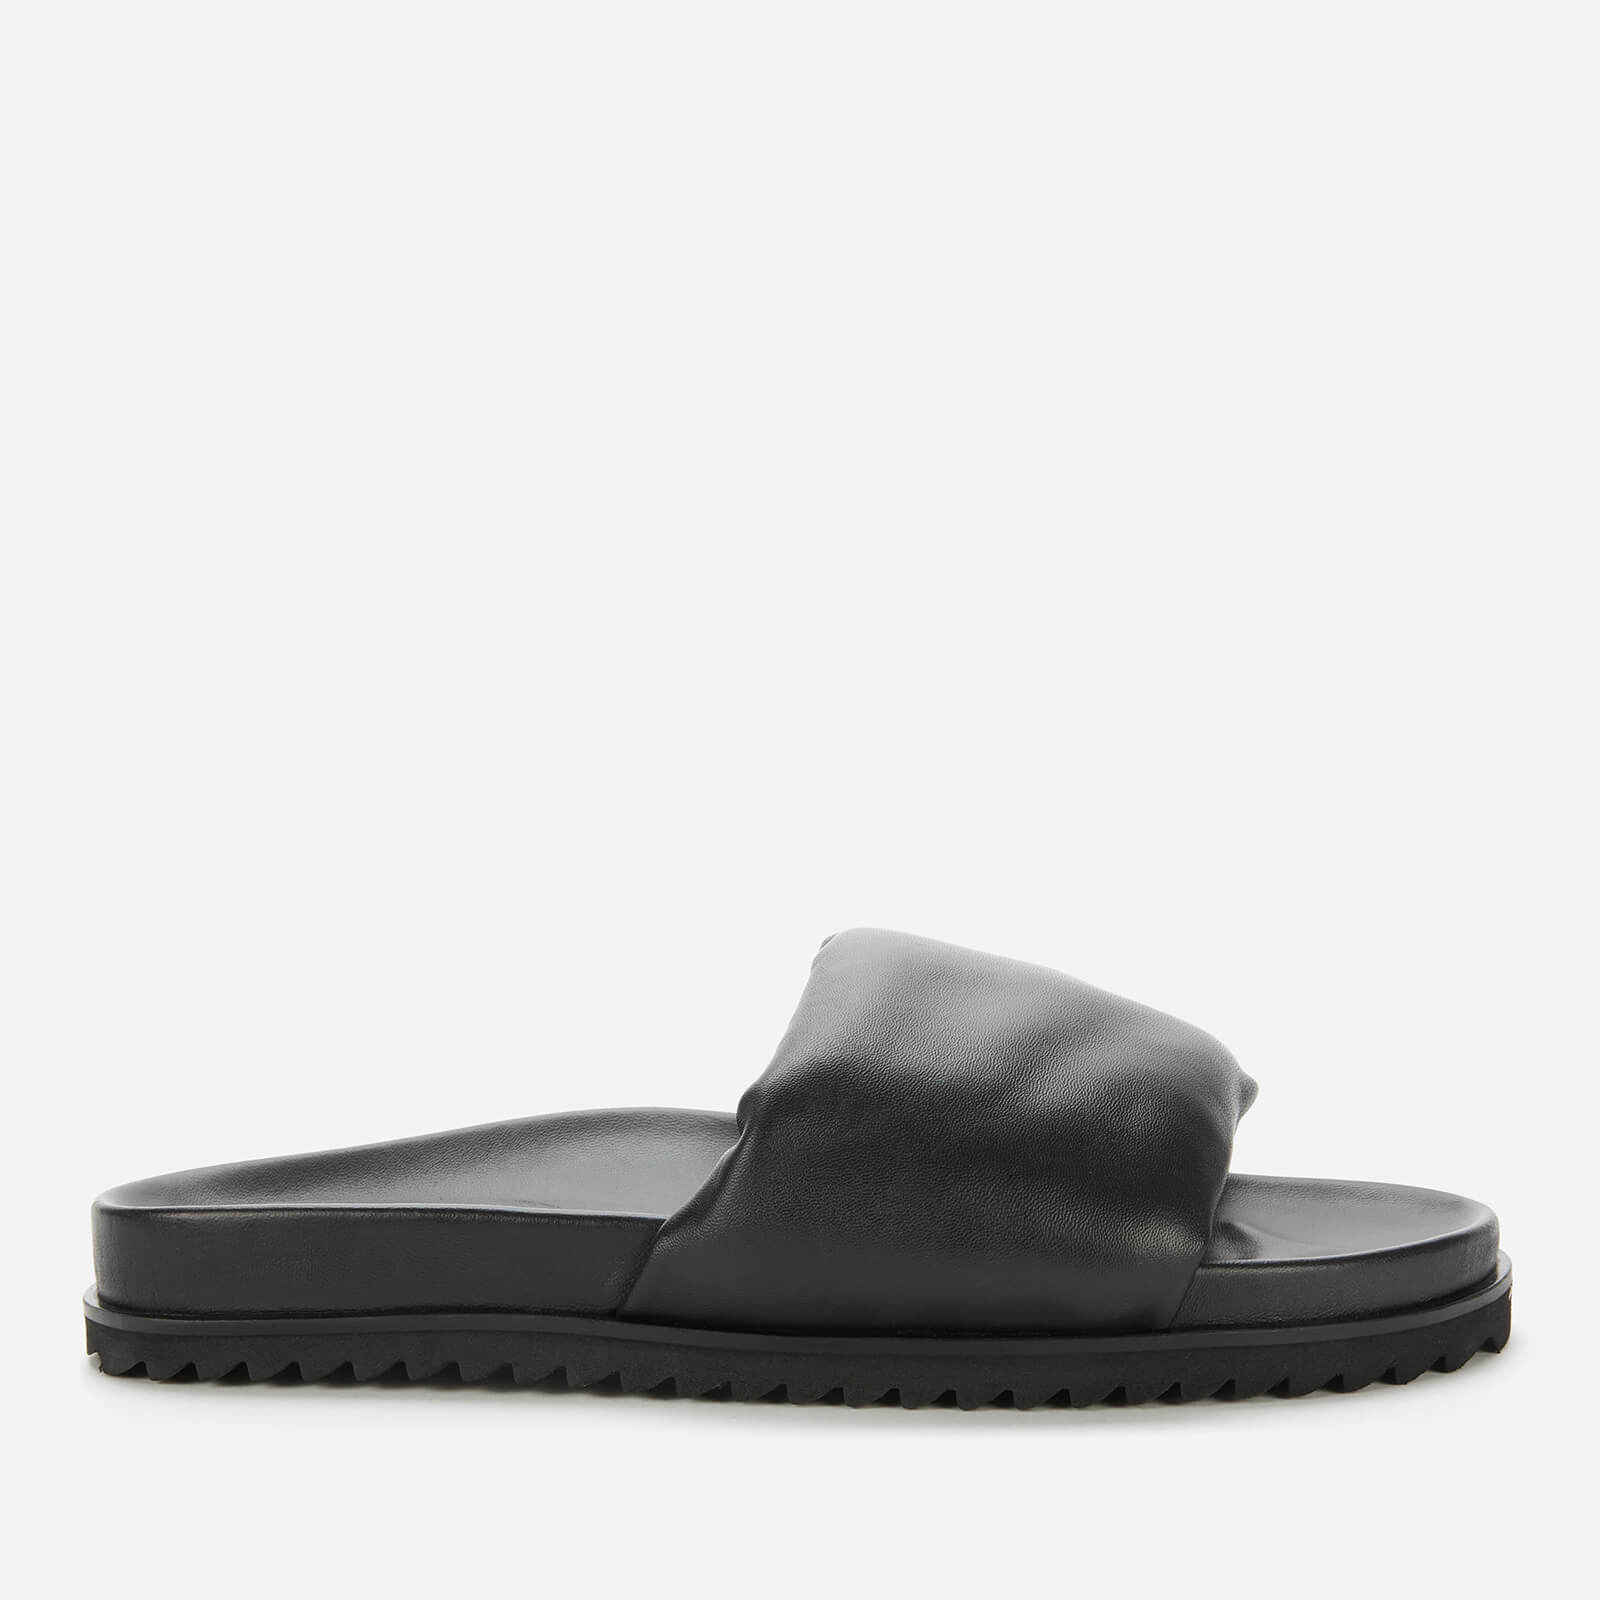 Whistles Women's Aiden Padded Slide Sandals - Black - UK 5